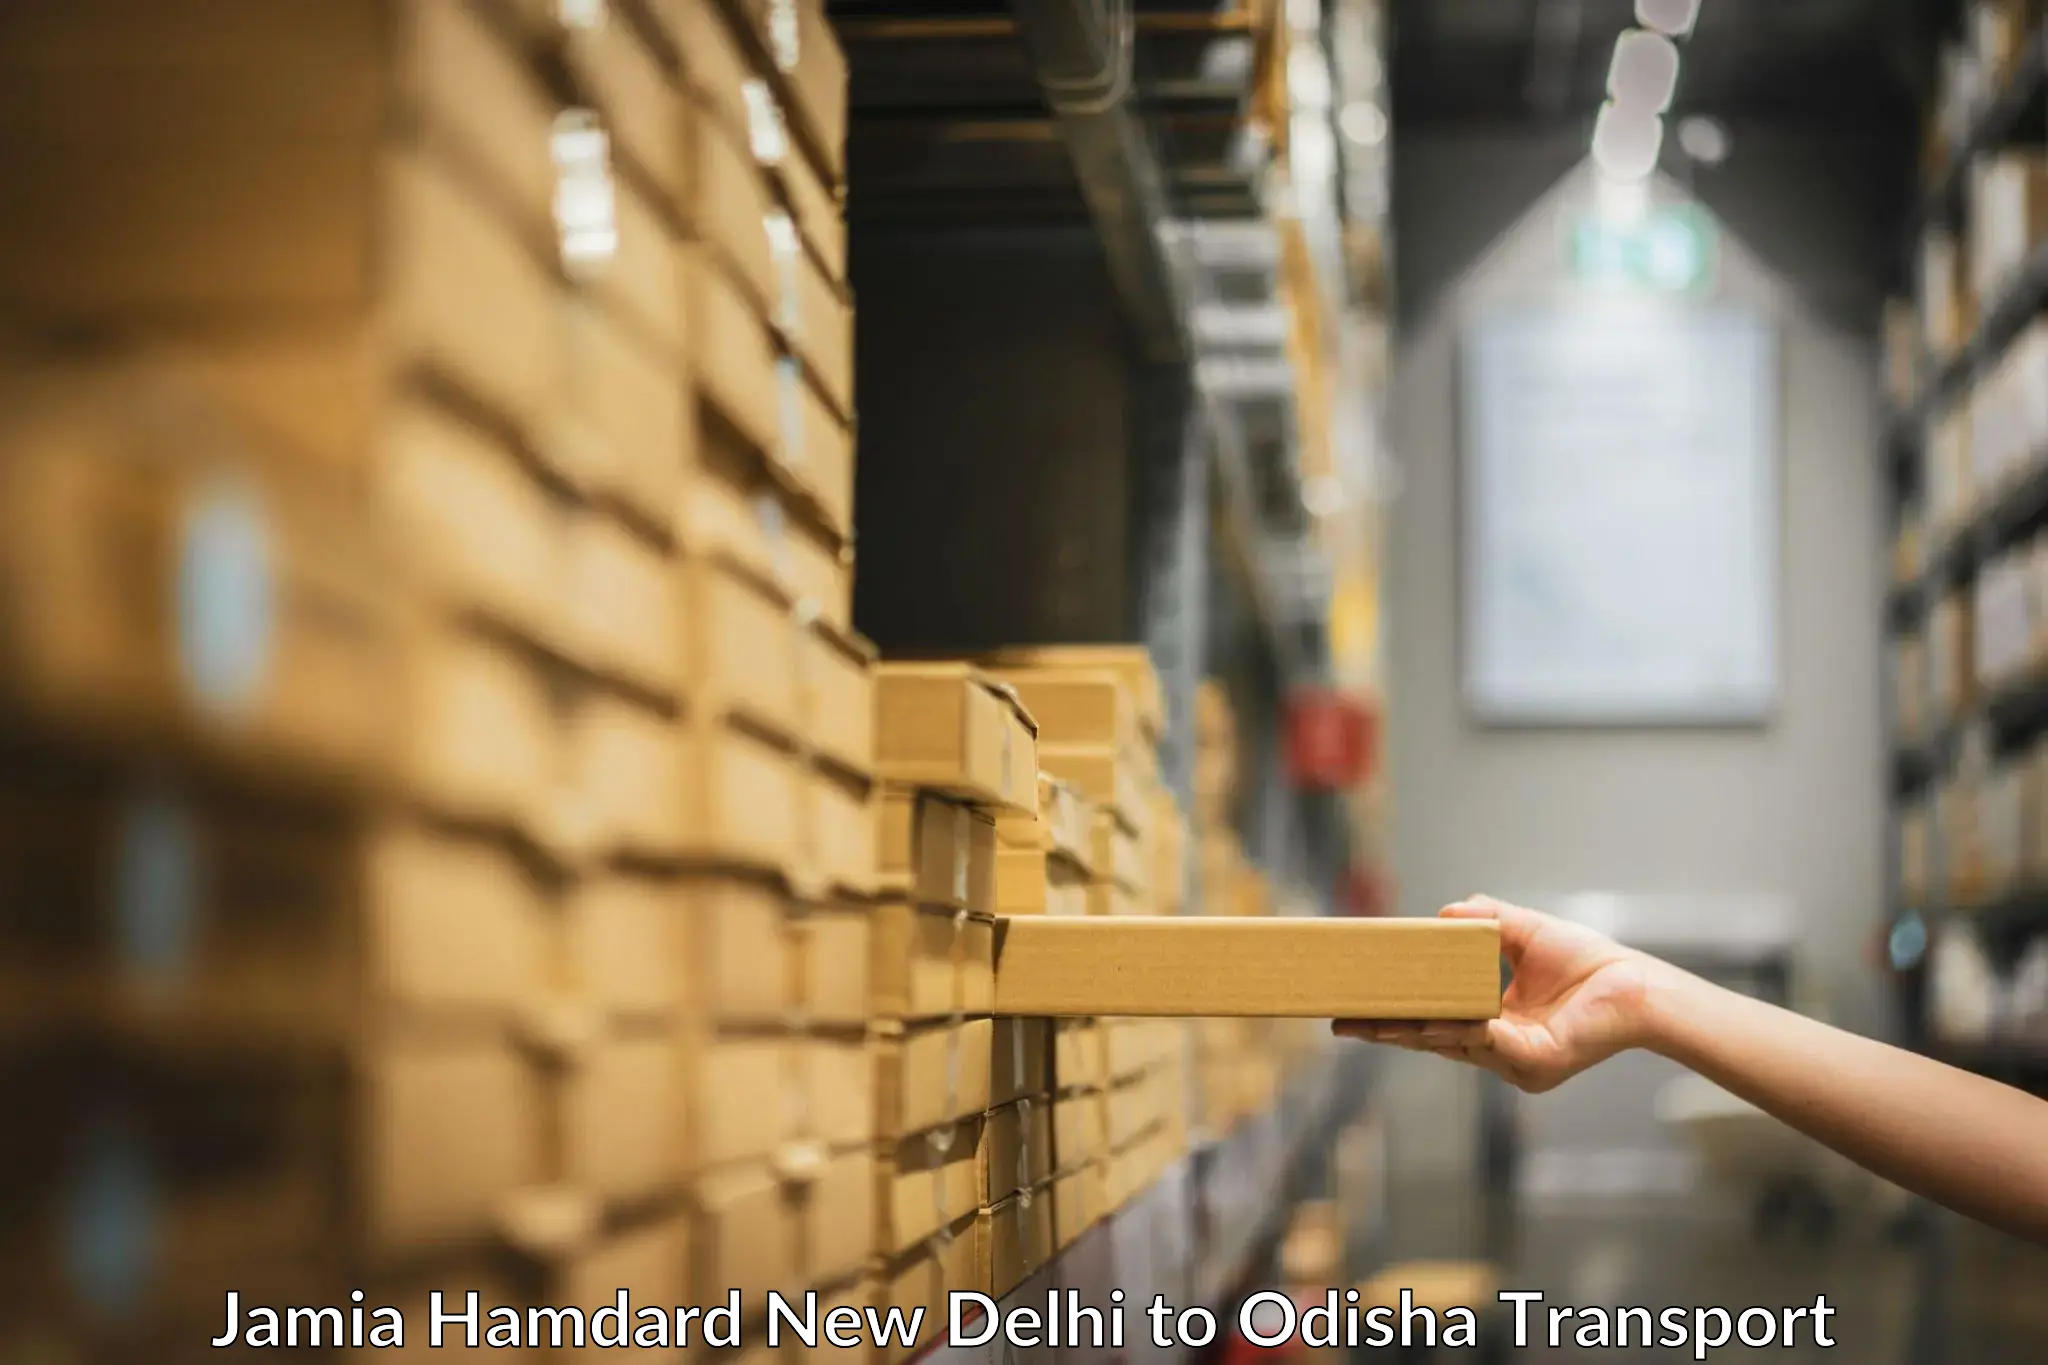 Bike shipping service Jamia Hamdard New Delhi to Odisha